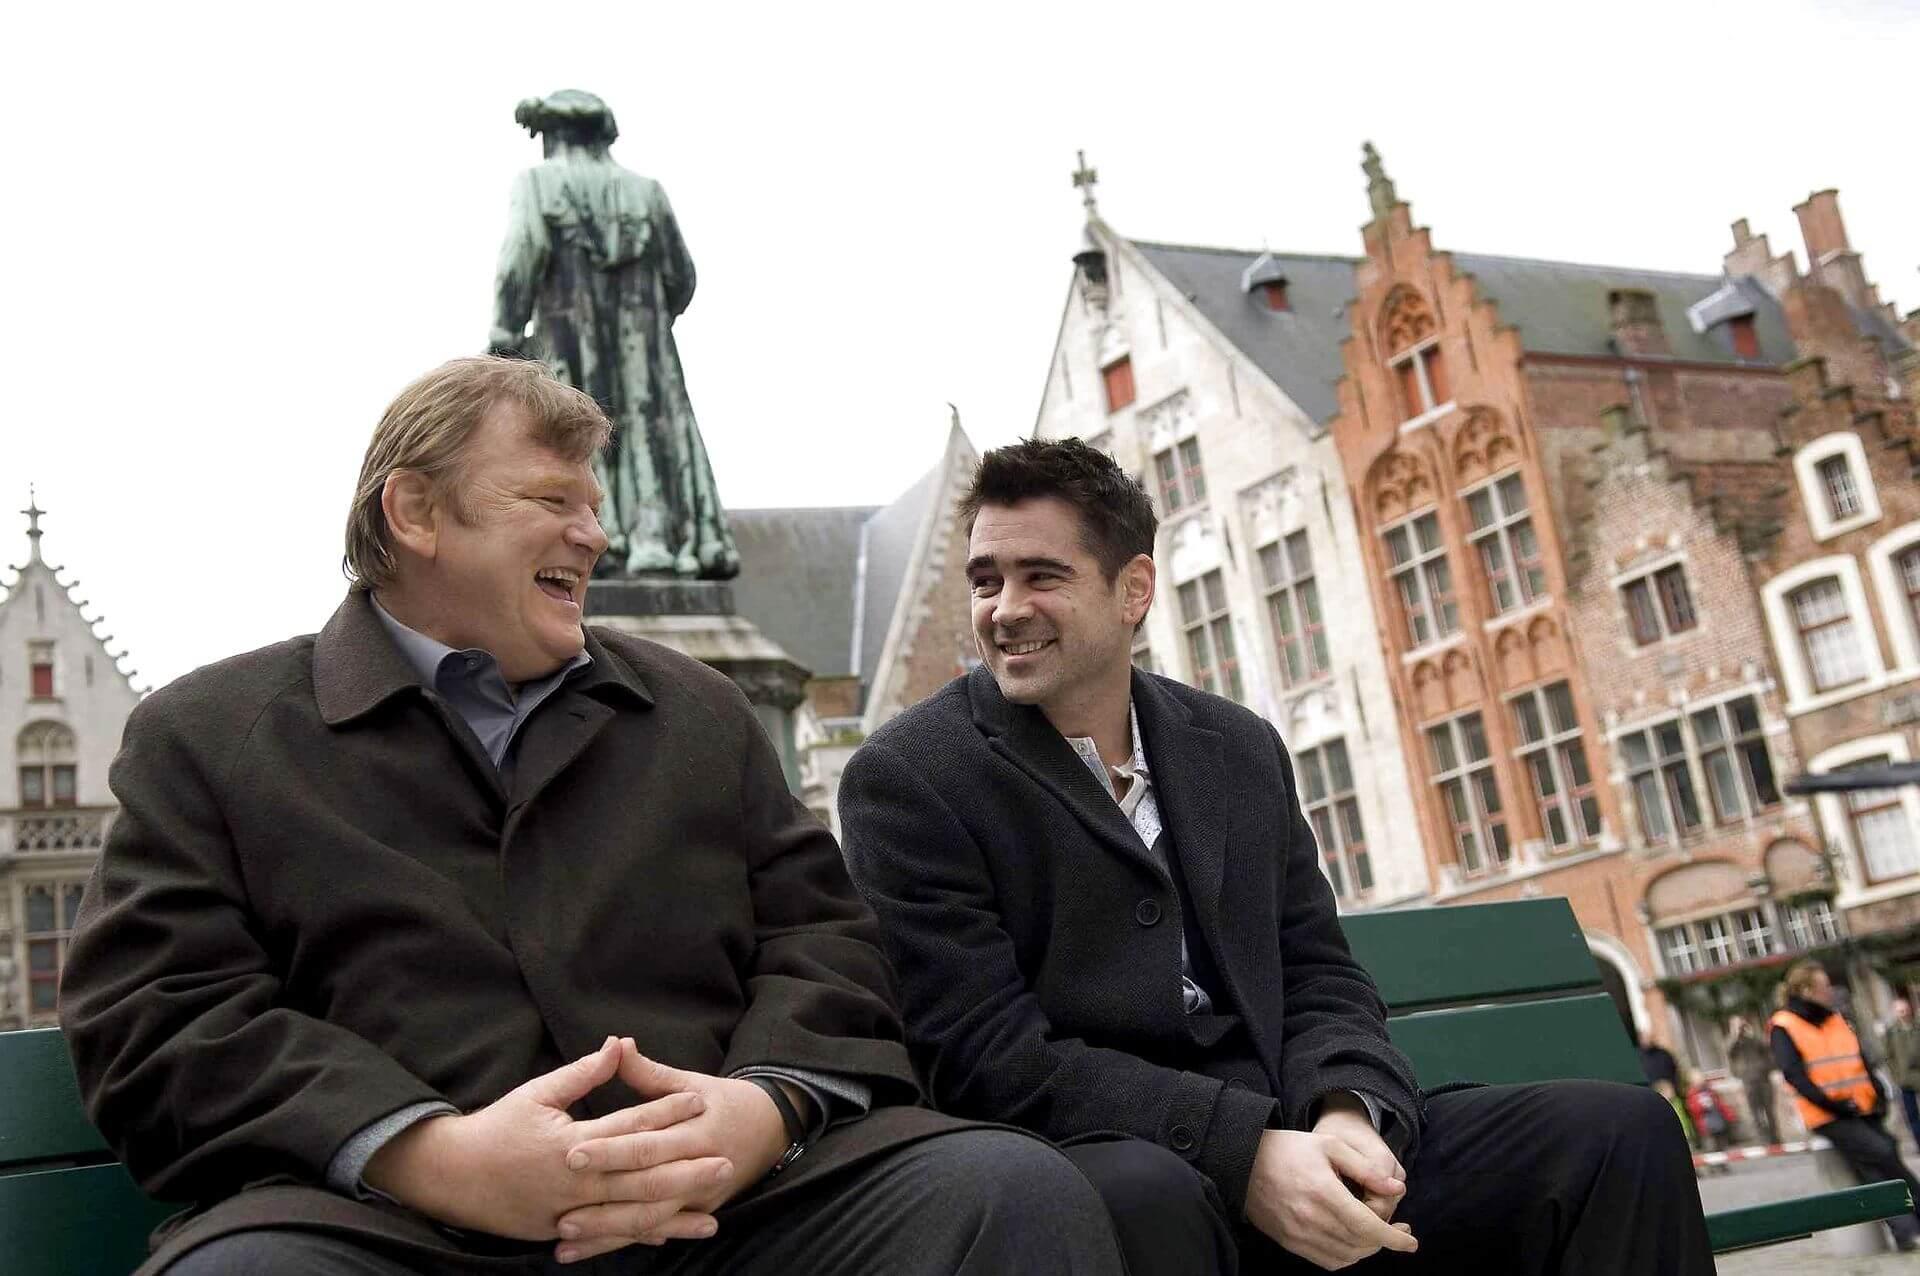 I 2019 besøgte 8,3 millioner turister byen Brügge i Belgien. Byens turisme er eksploderet, og det skyldes blandt andet filmen “In Bruges med Brendan Gleeson og Colin Farrell i hovedrollerne.